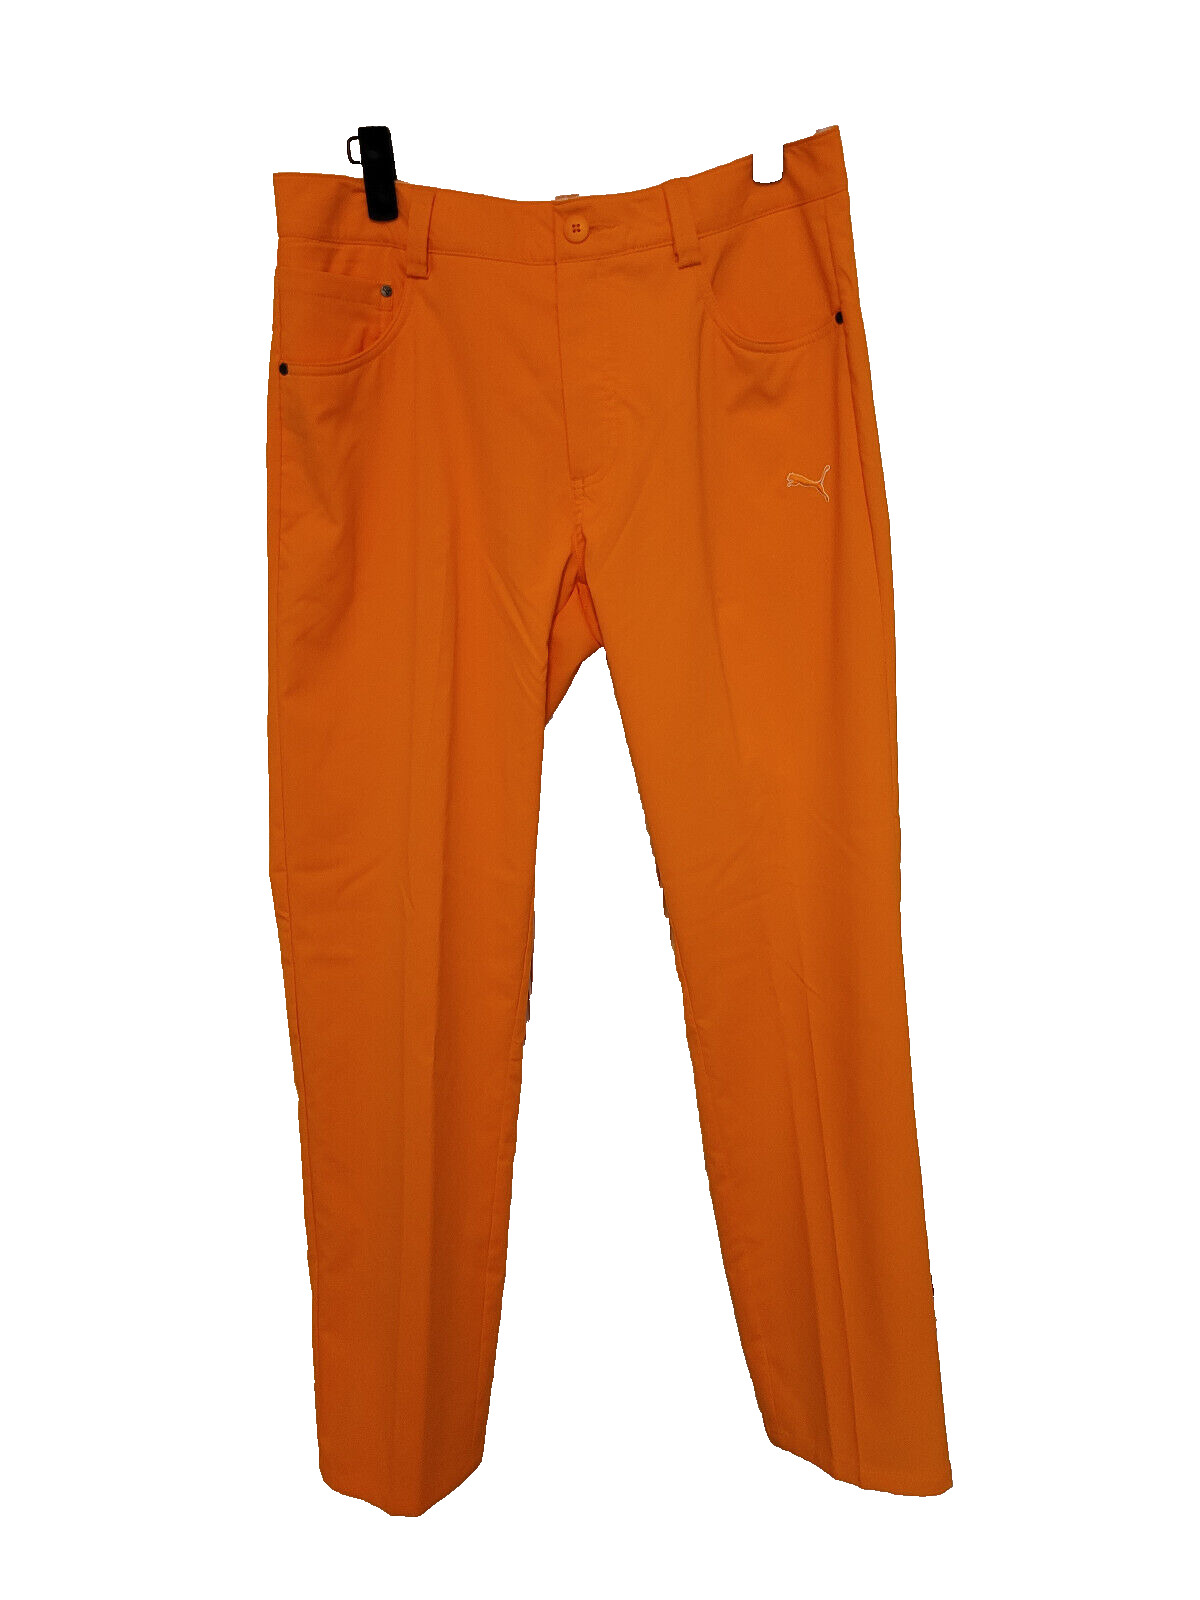 PUMA Cobra Golf Dry Cell Pants Mens Tag Sz 30x32 Orange Chino Performance